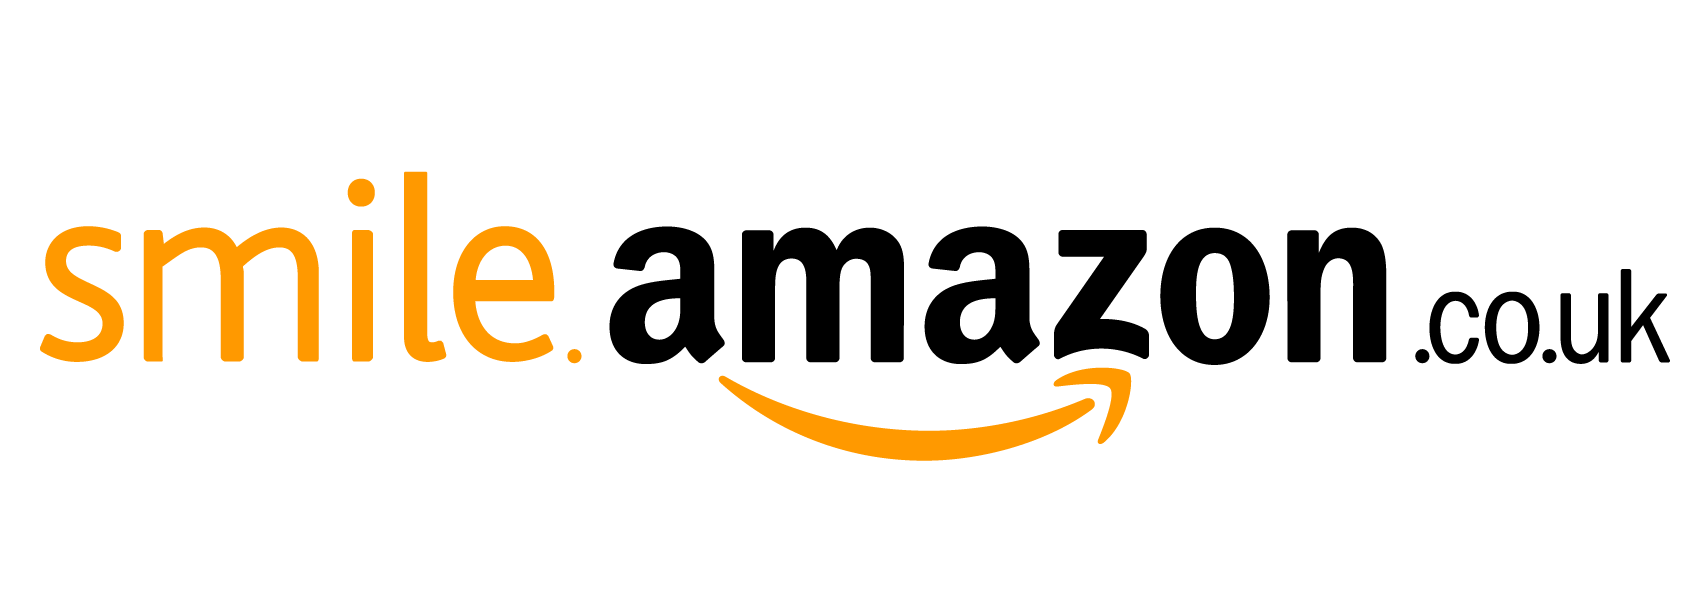 Amazon Donates